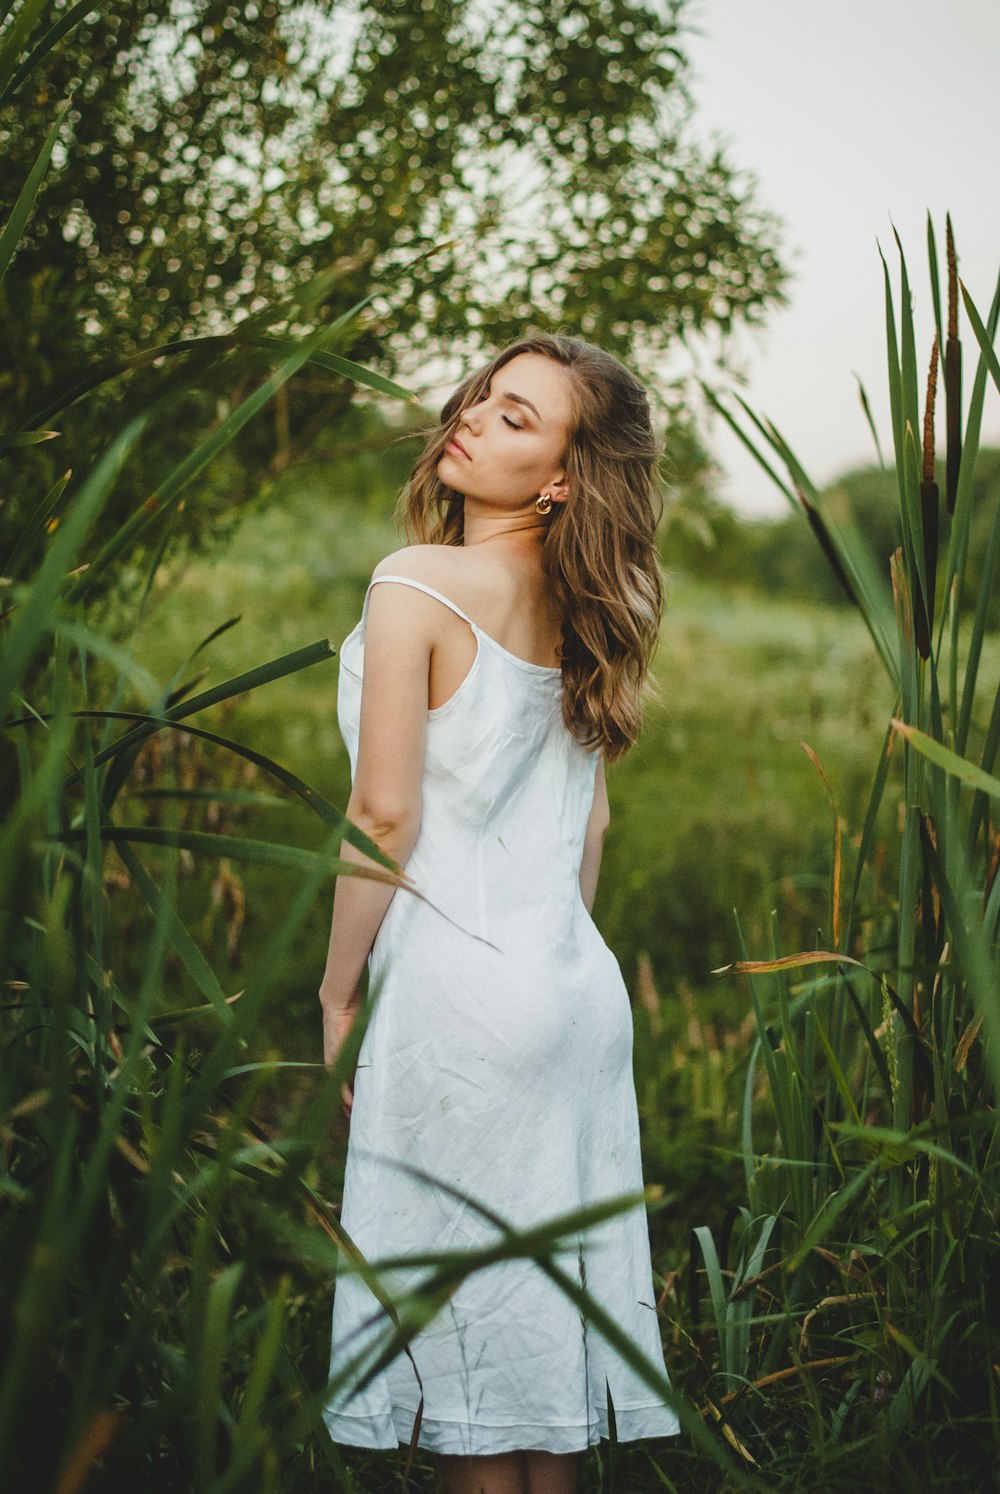 낮 동안 녹색 식물 근처에 서 있는 흰색 스파게티 스트랩 드레스를 입은 여자